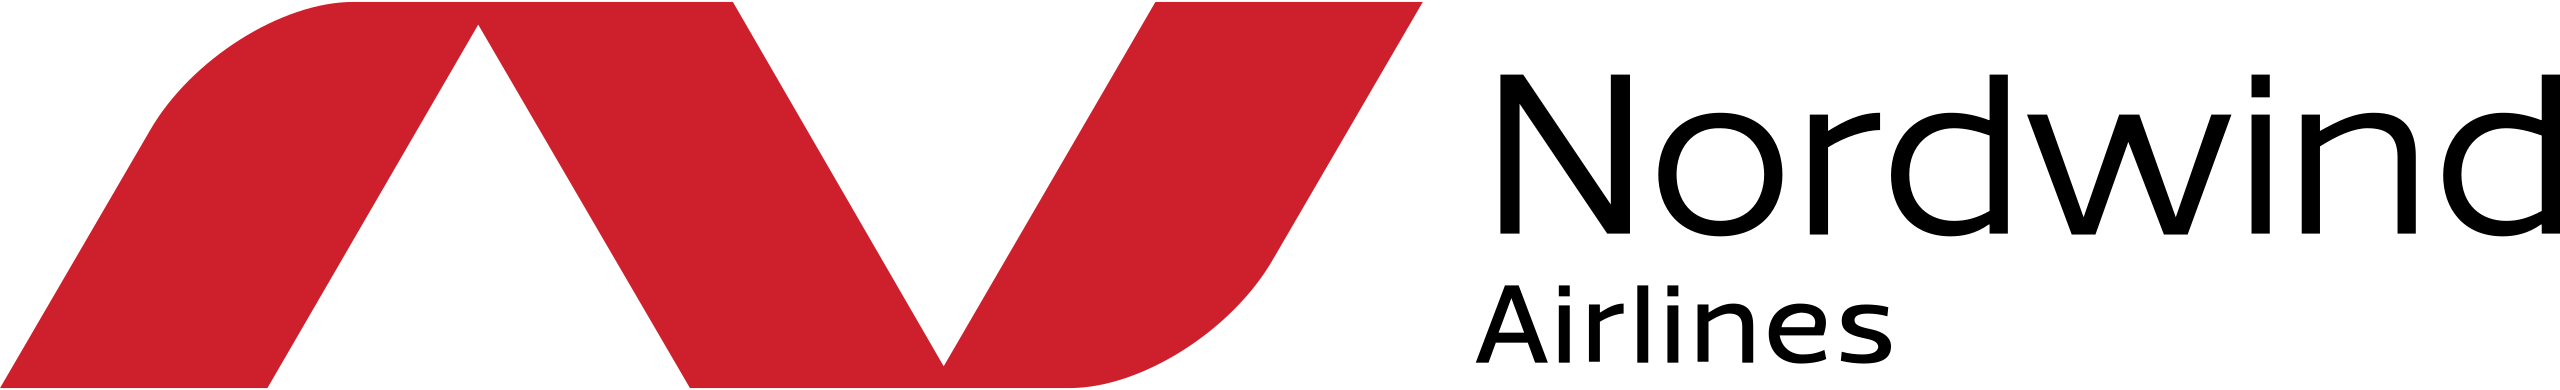 لوگو هواپیمایی